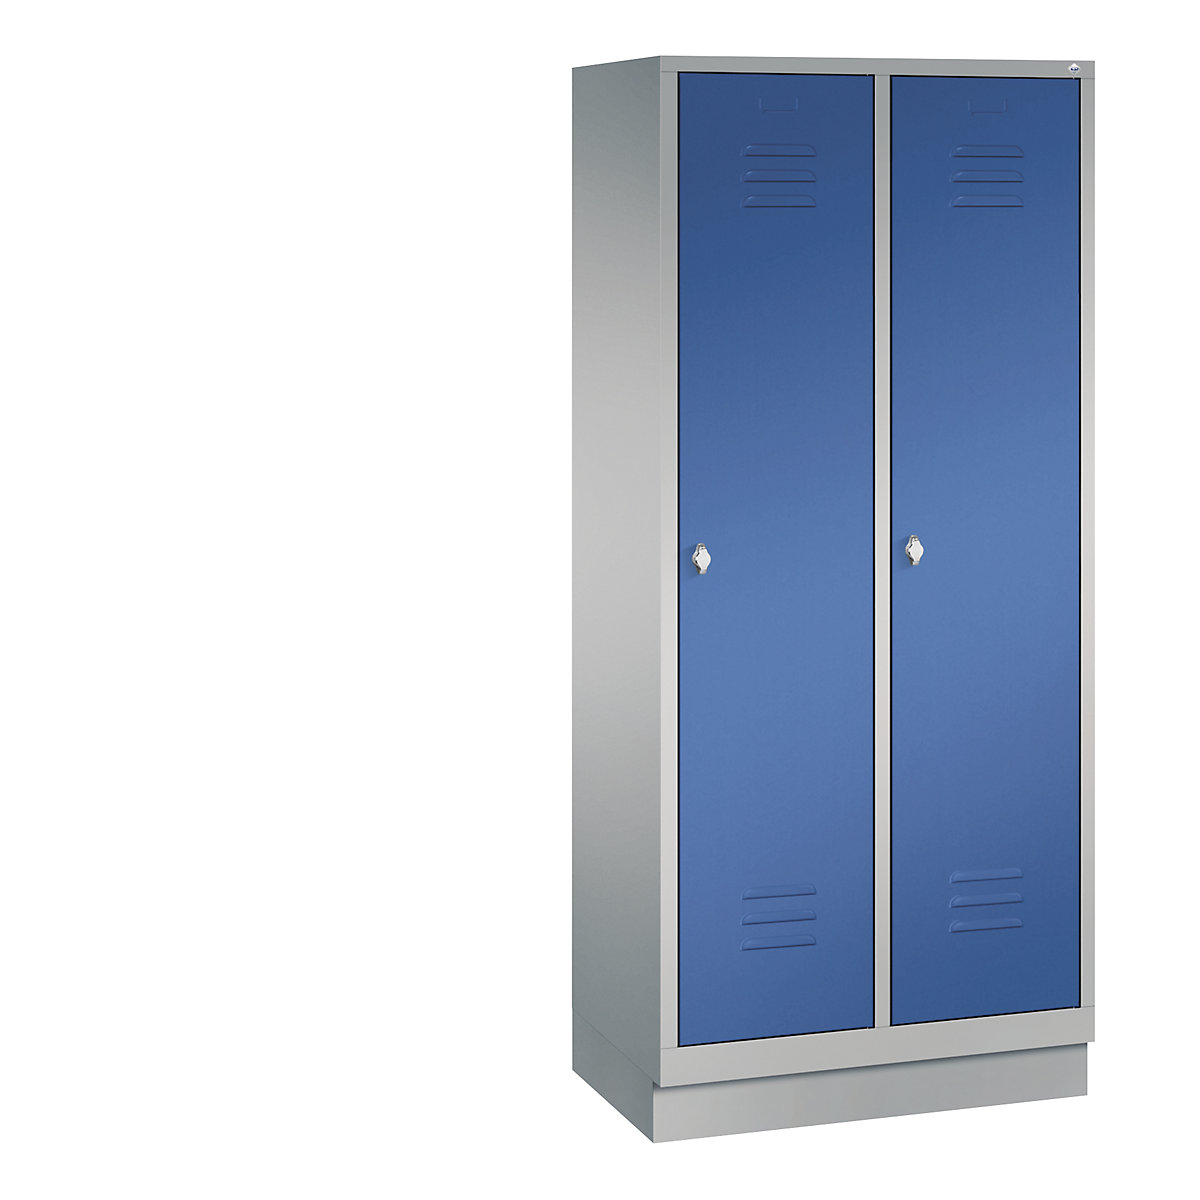 Garderobekast CLASSIC met sokkel – C+P, 2 afdelingen, afdelingsbreedte 400 mm, blank aluminiumkleurig / gentiaanblauw-12